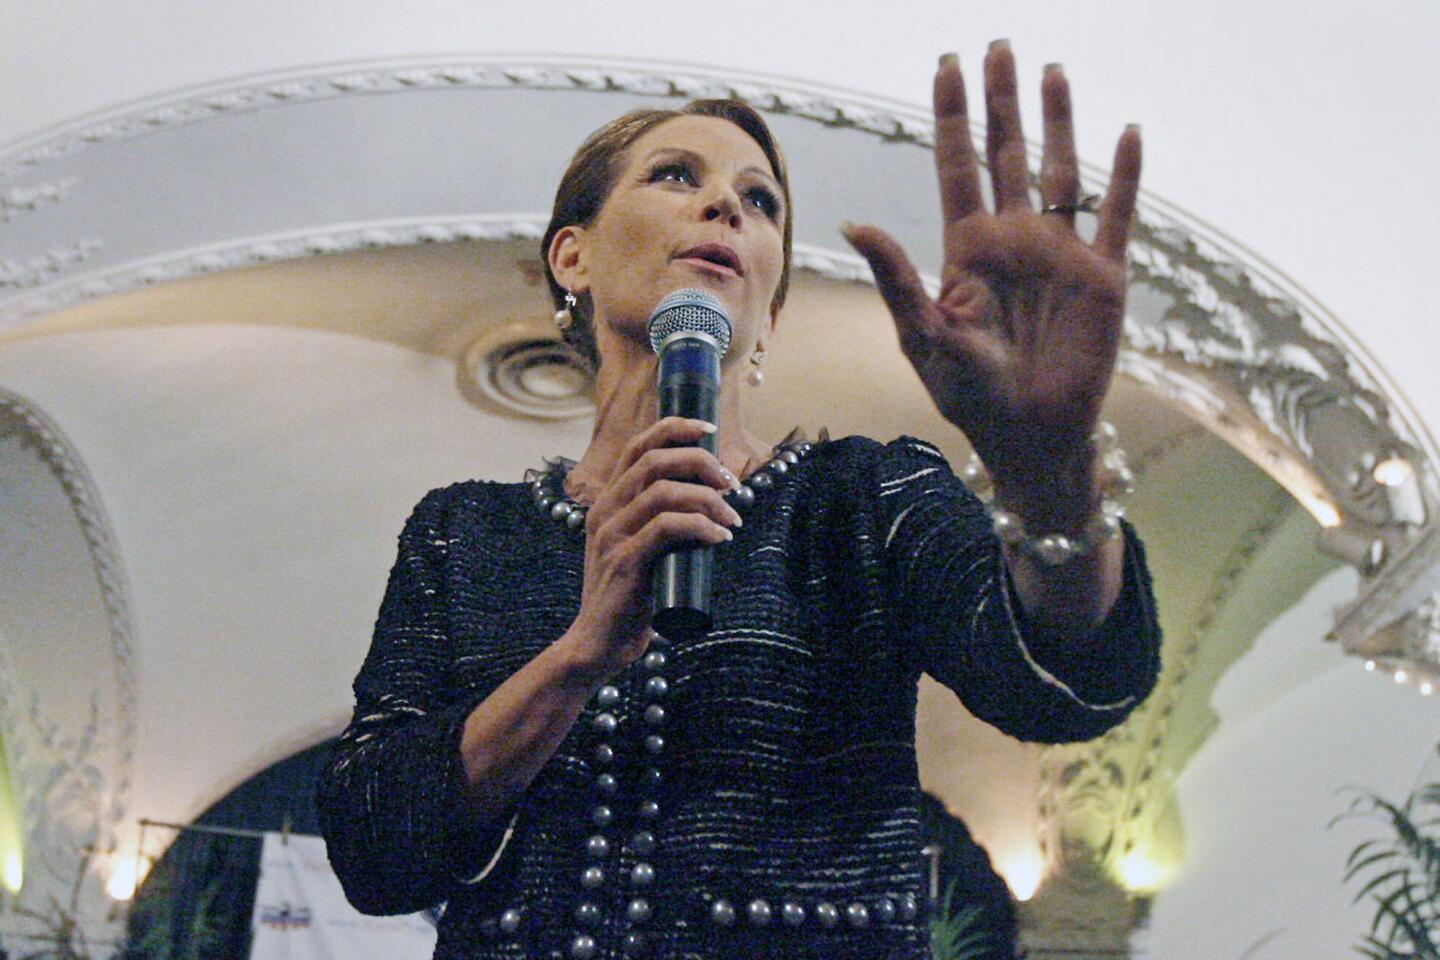 Michele Bachmann visits Pasadena